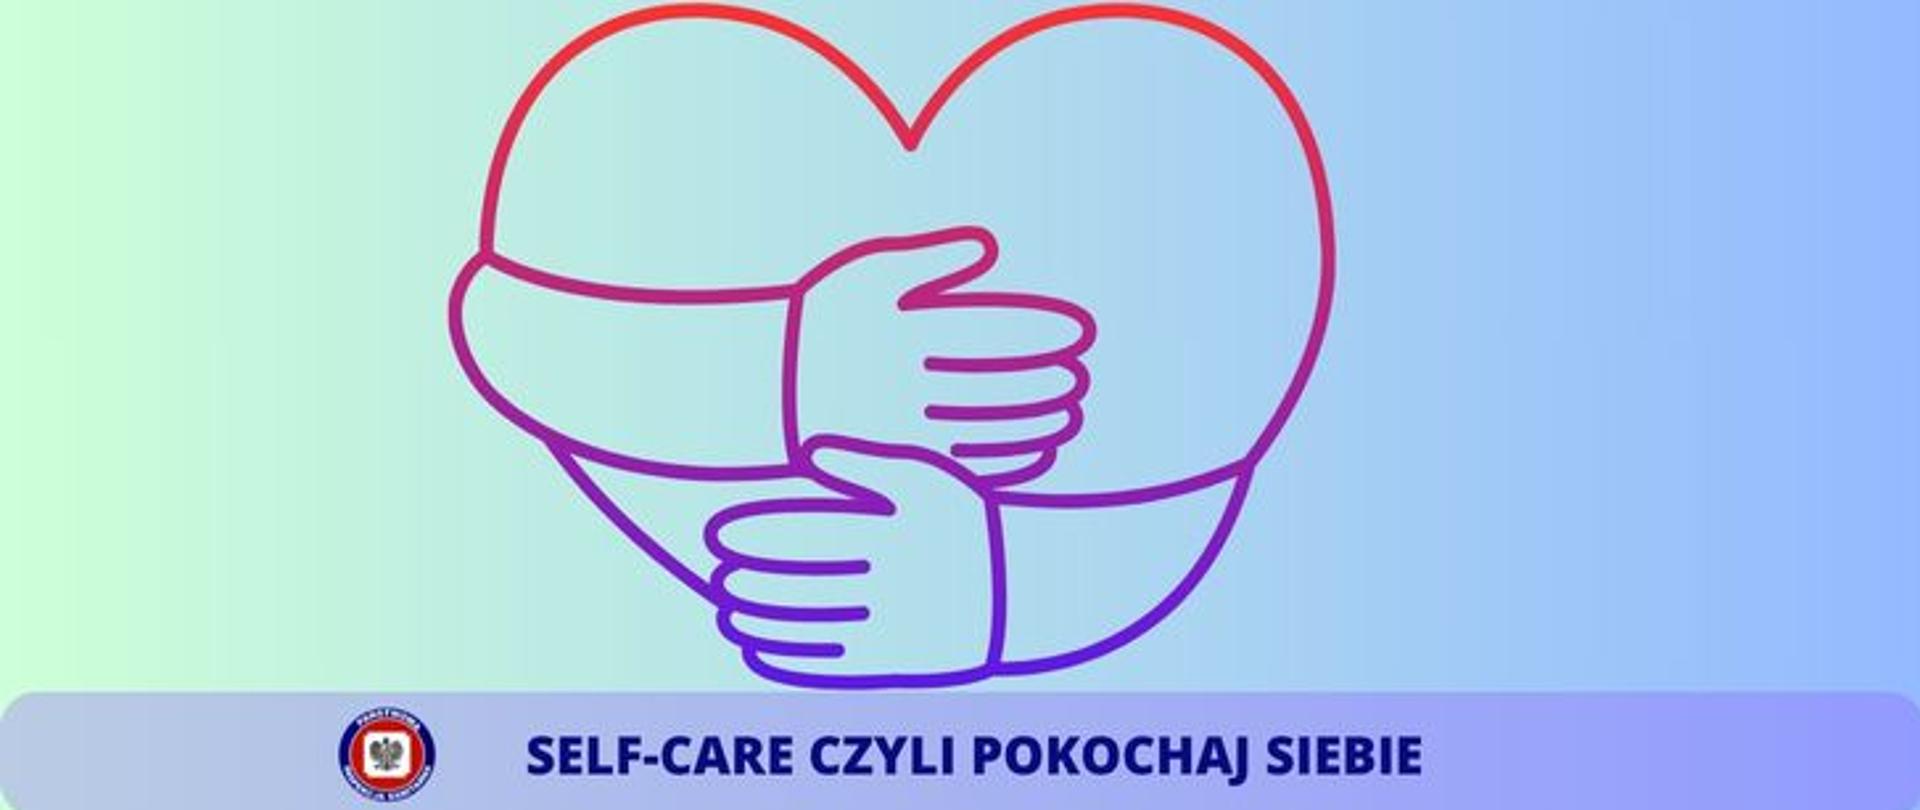 W środkowej części zdjęcia widoczne serce objęte ramionami. poniżej logo Inspekcji Sanitarnej i napis SELF_CARE czyli pokochaj siebie